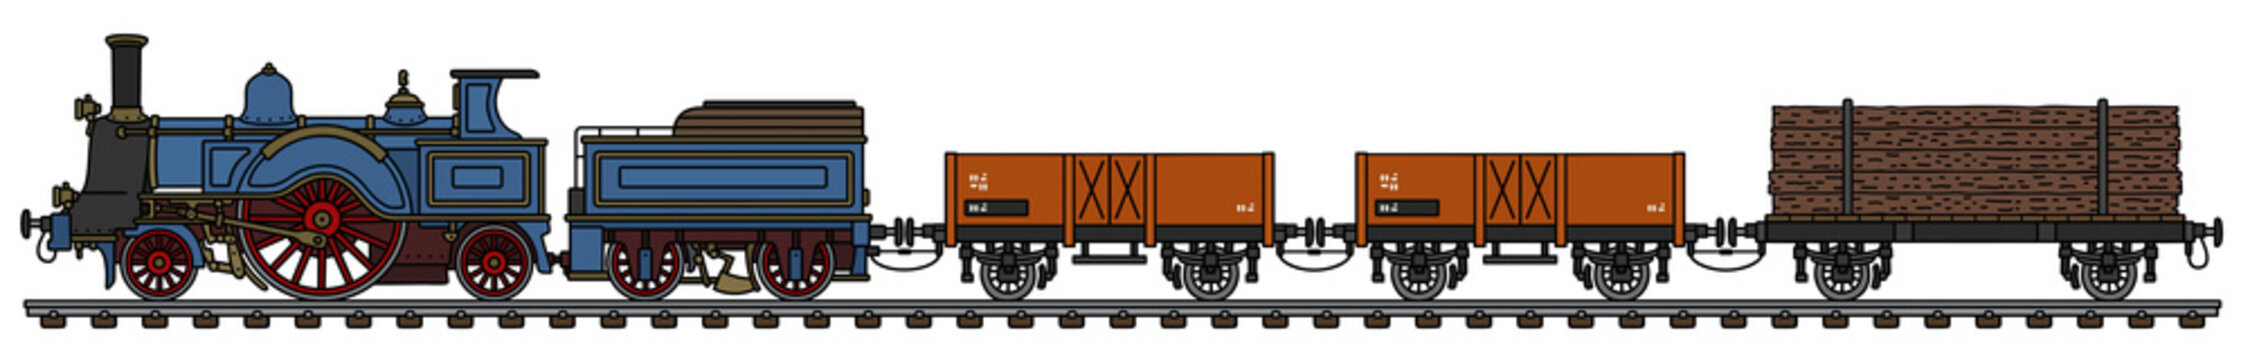 Vintage steam freight train